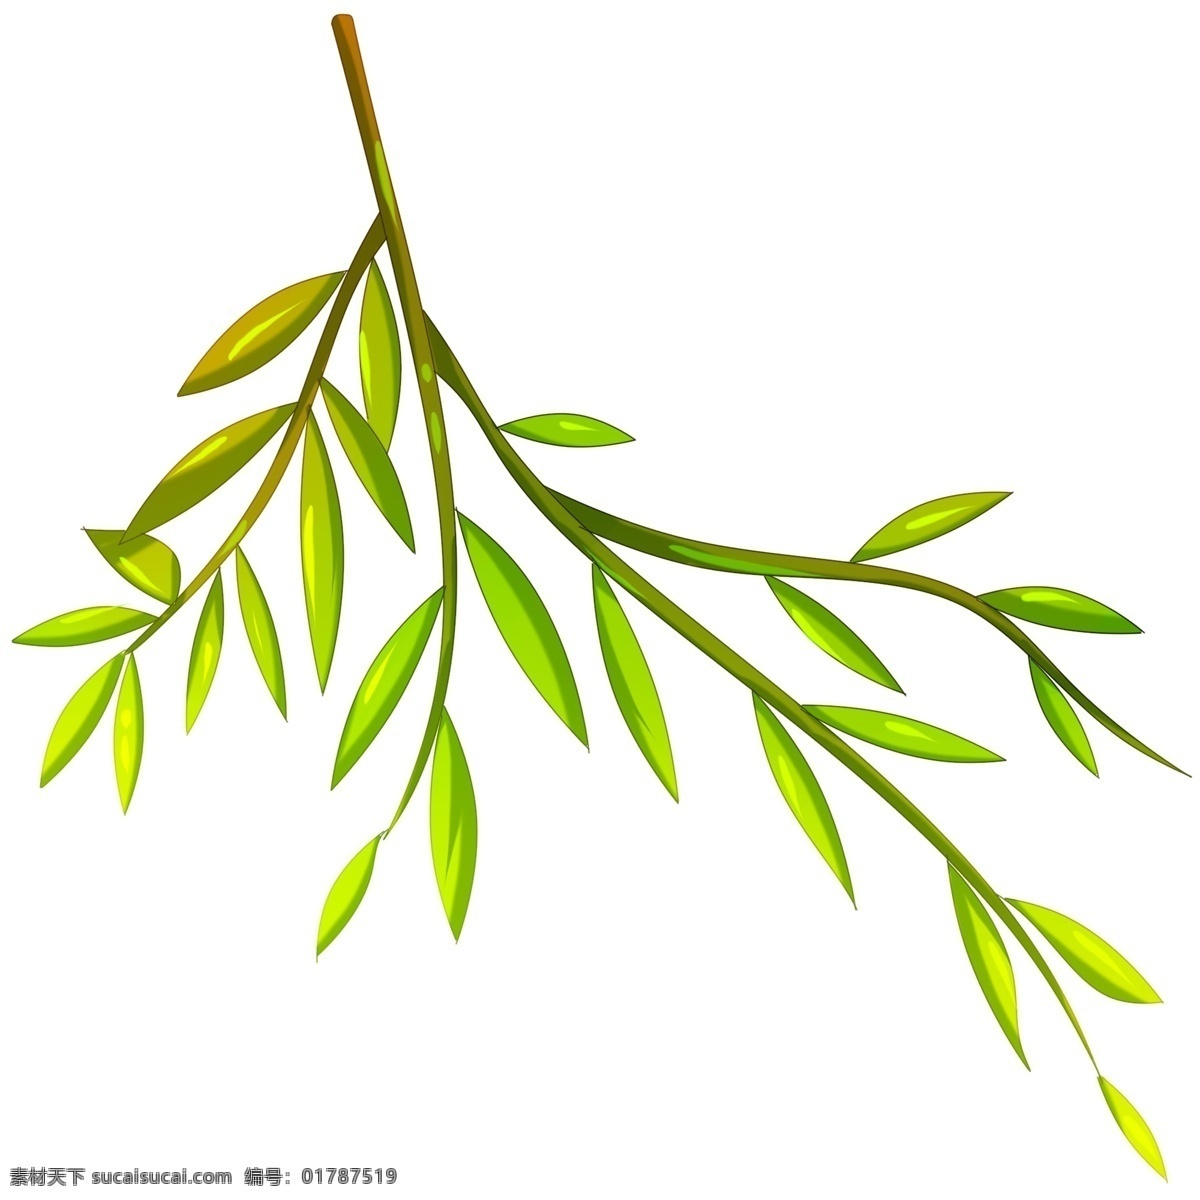 垂钓 柳树 手绘 插画 绿色的叶子 叶子装饰 手绘柳树 卡通柳树 垂钓的柳树 漂亮的柳树 绿油油的柳树